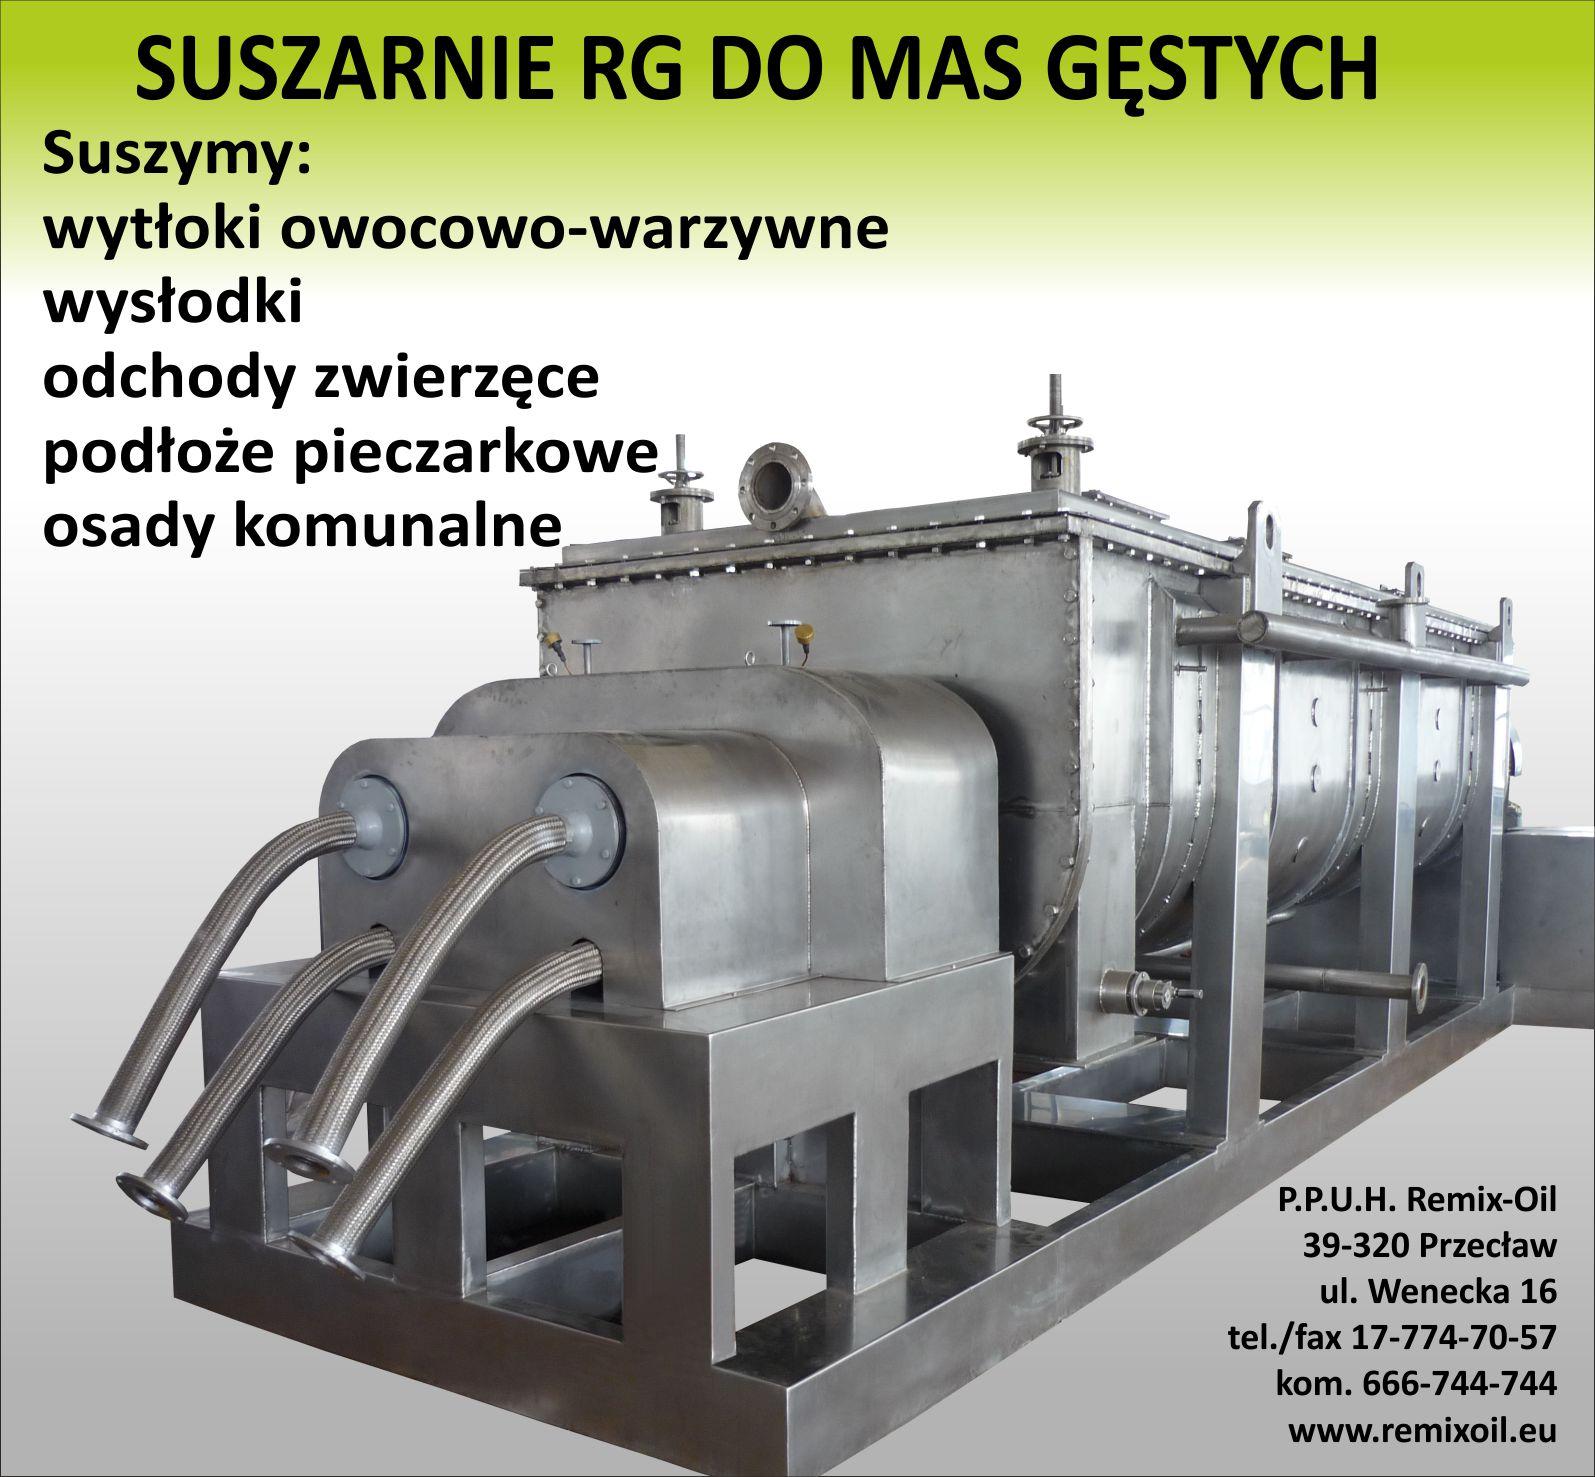 Suszarnie i Linie technologiczne do przerobu biomasy., Przecław